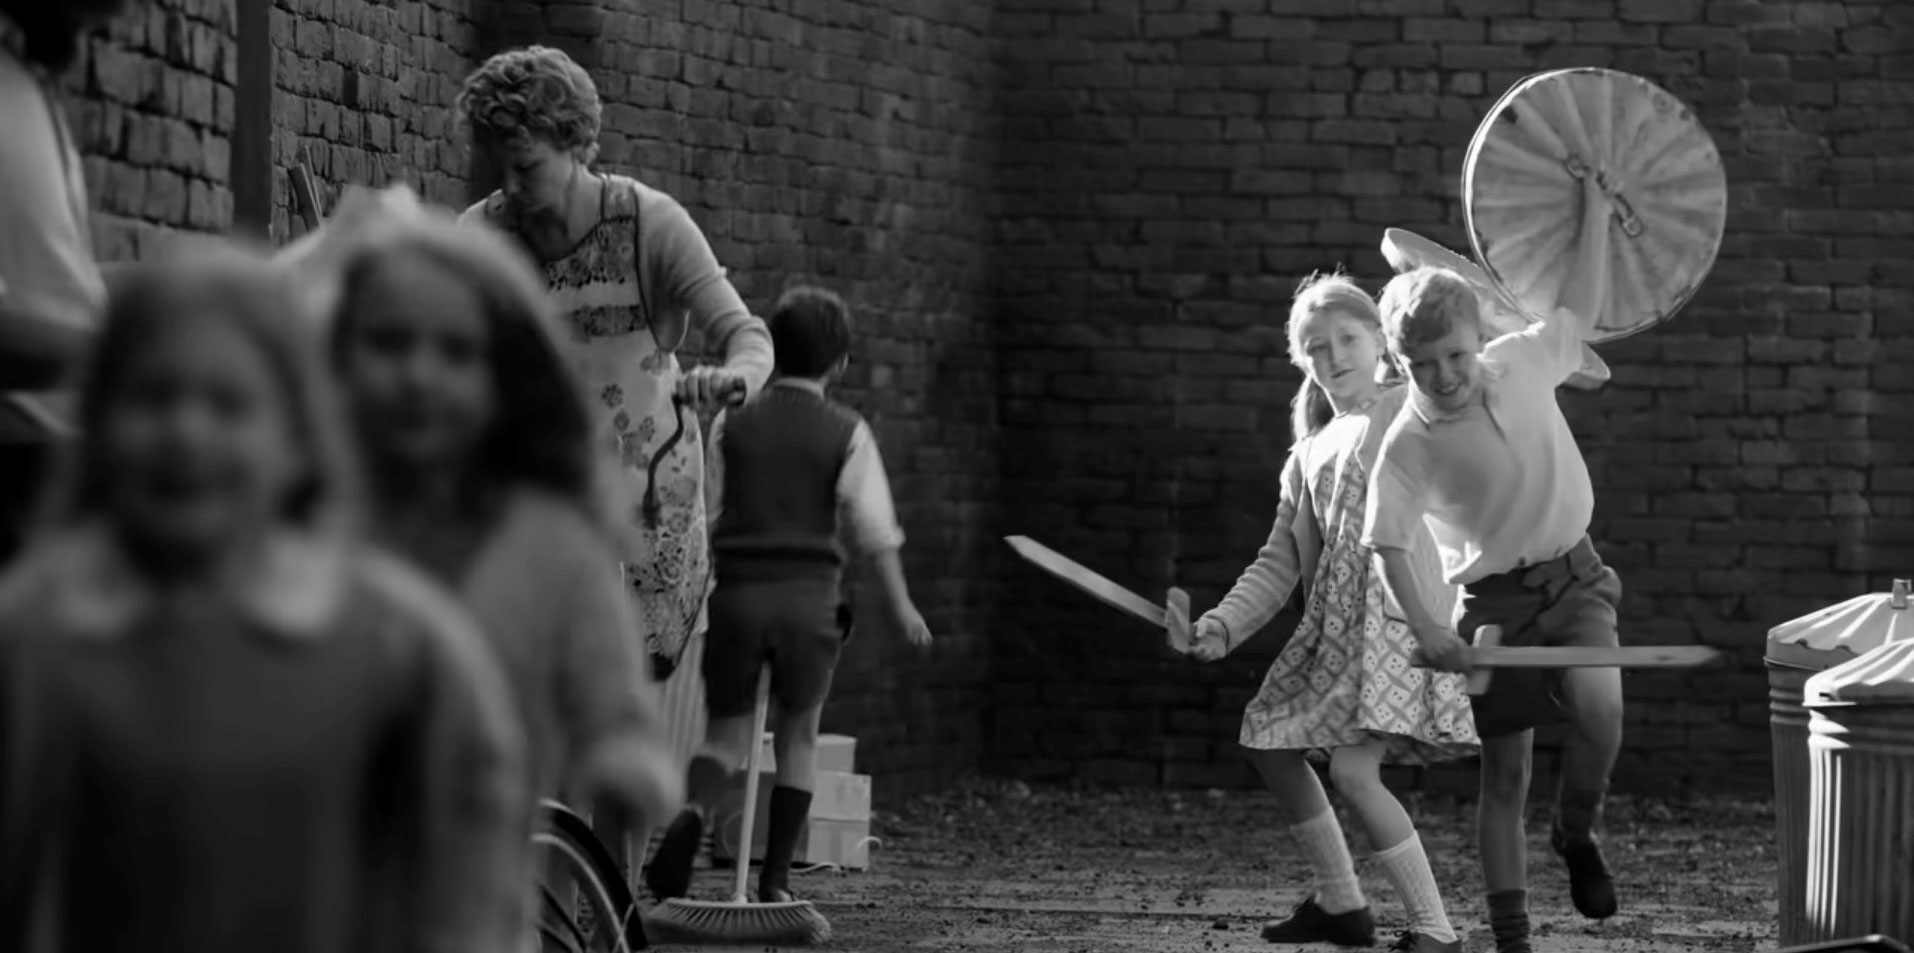 מגזין מקו ועד תרבות / מיזם דיגיטלי ללא צרכי רווח לספר אותו סיפור למבוגרים ולילדים <br>לרתק ולרגש<br> בתמונות מינימליסטיות ובמשחק מעורר אמפטיה.<br><br> צפו בסרט<br><br> Belfast של Kenneth Branagh 